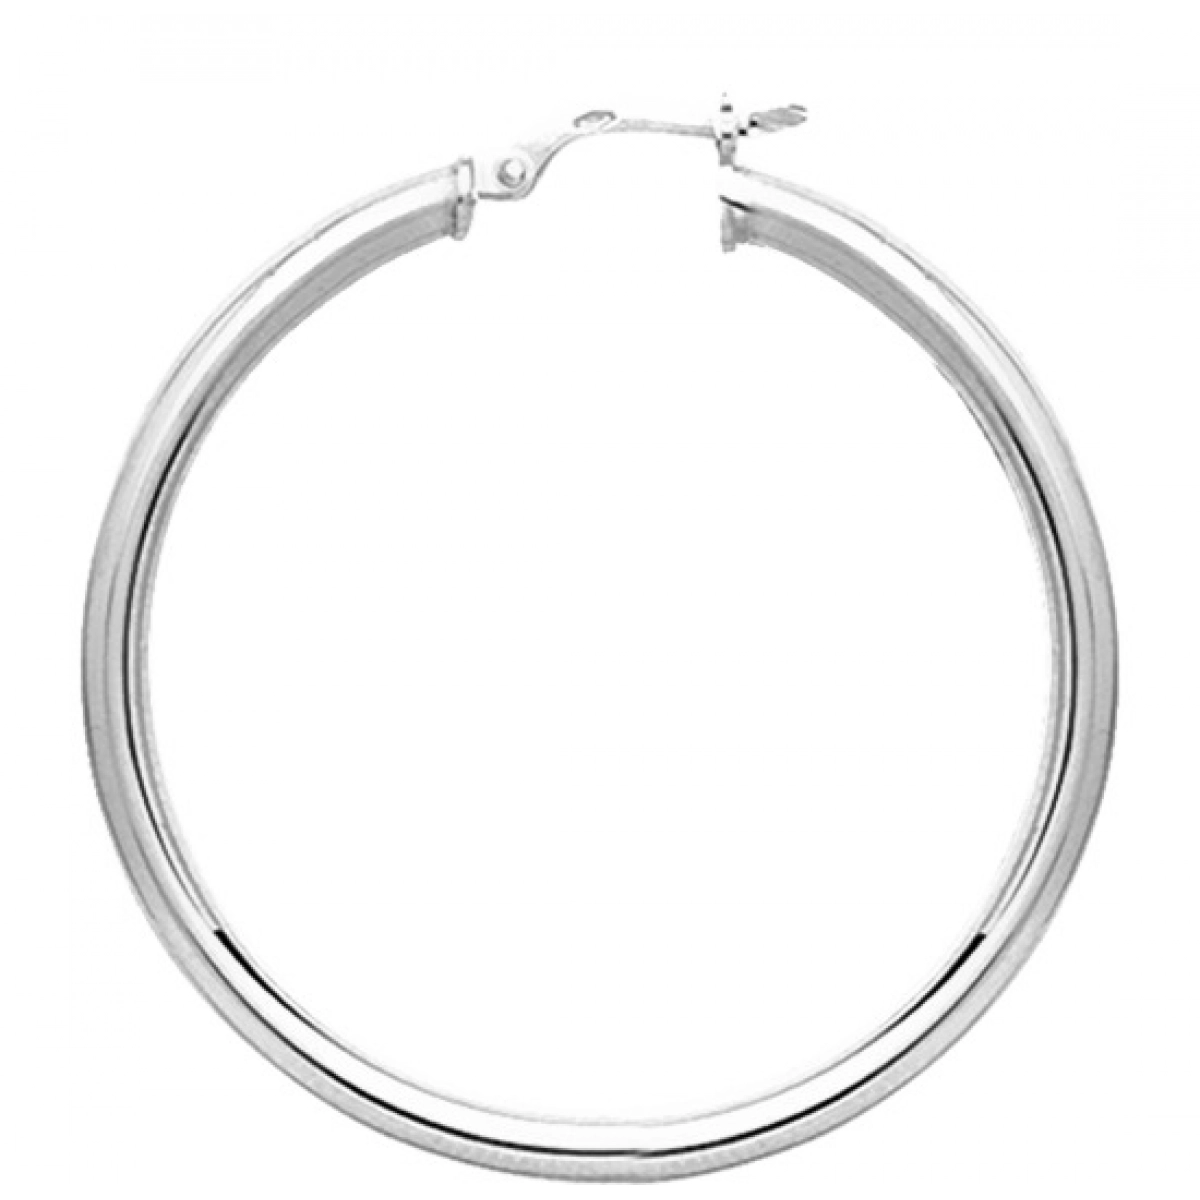 Hoops earrings pair 925 Silver Lua Blanca  235189.0